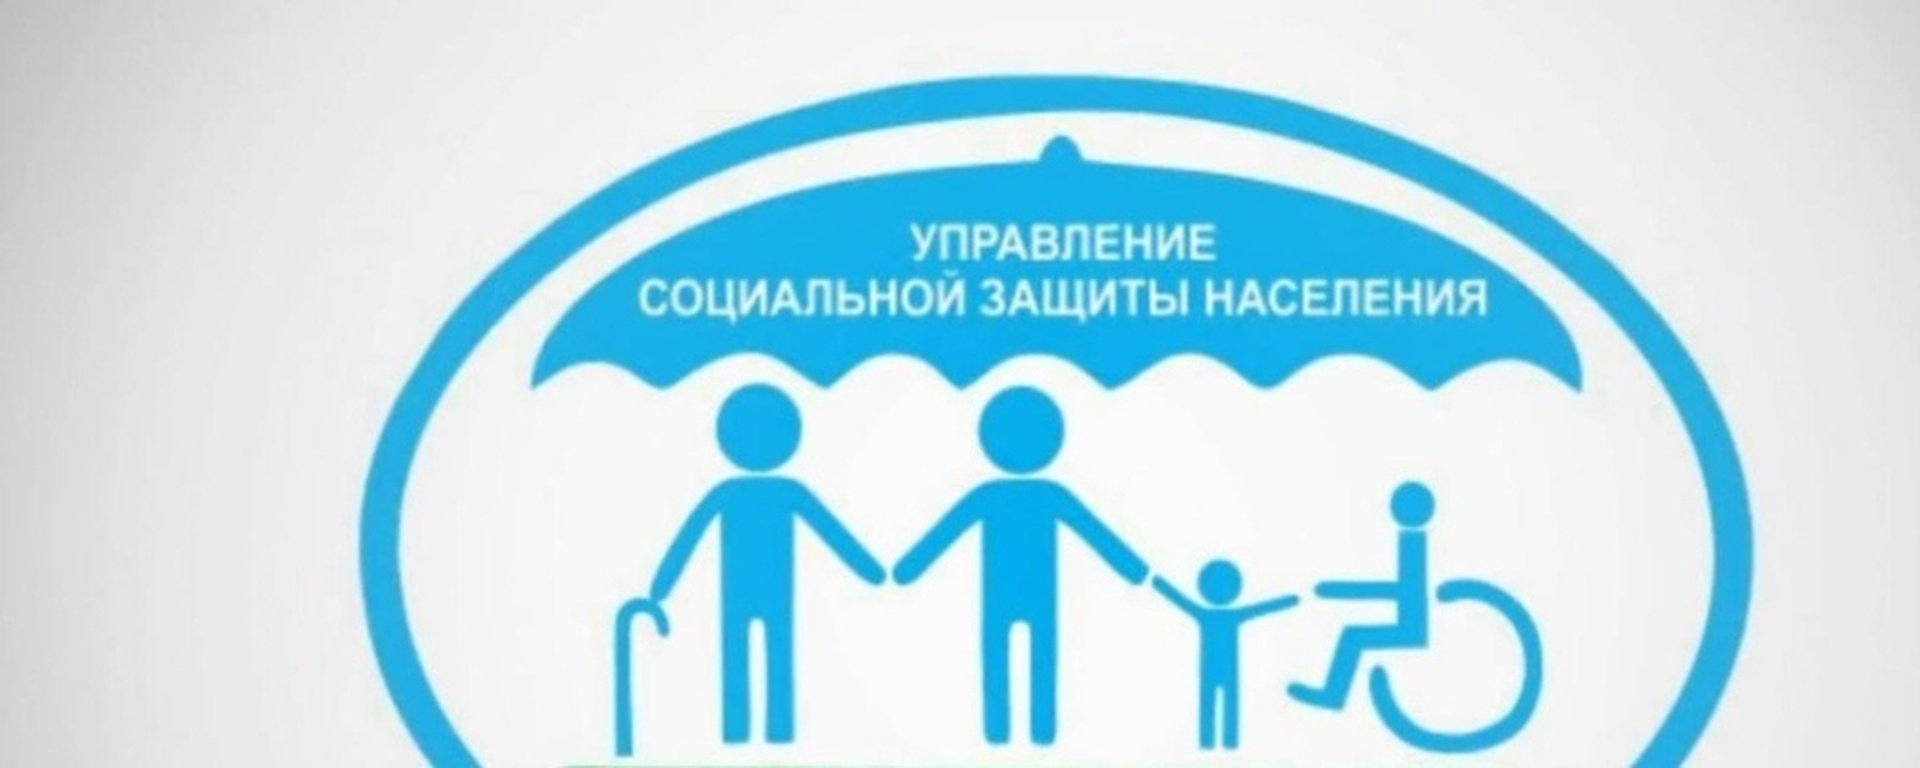 Управление в области социальной защиты населения. Новосибирский отдел соцзащиты населения. Социальная защита. Организация социальной защиты населения. Эмблема социальной защиты населения.